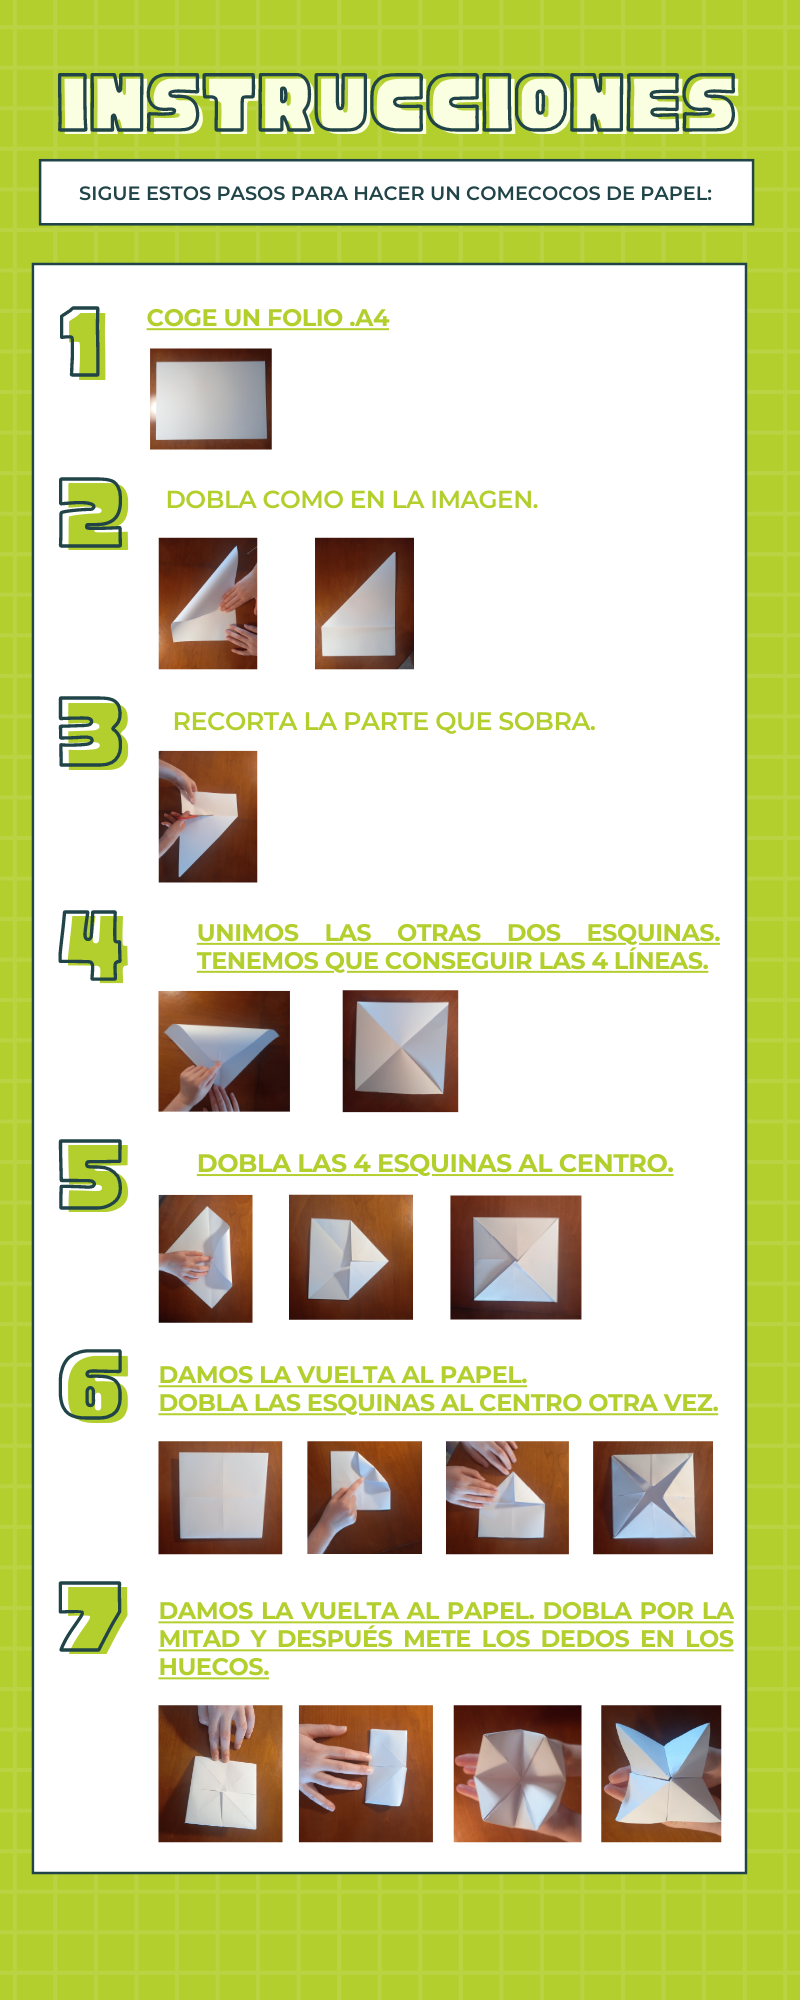 La infografía muestra los siete pasos para realizar un comecocos de papel